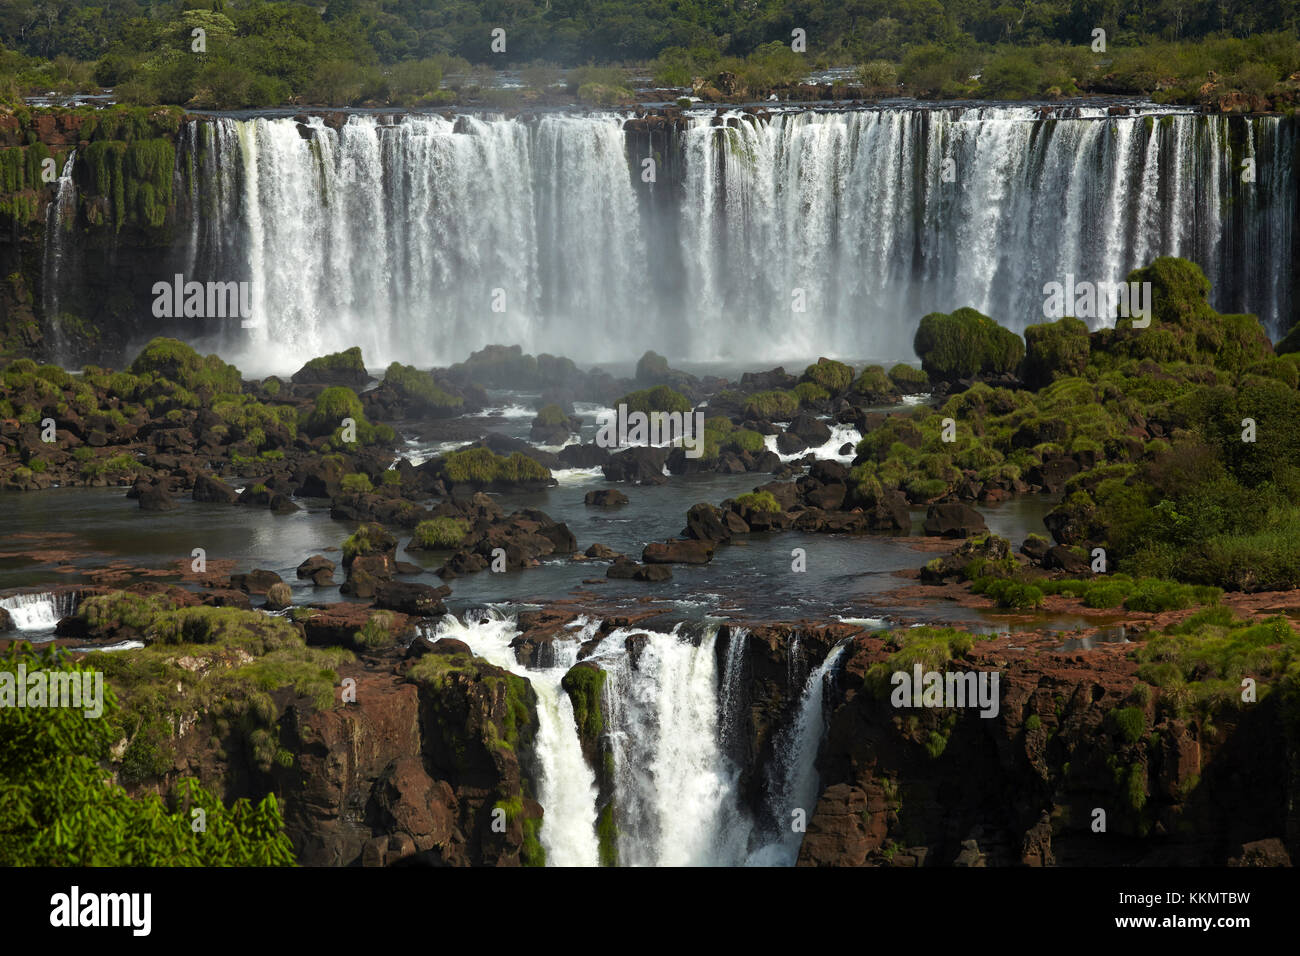 Salto Rivadavia y Salto tres Musqueteros, Cataratas del Iguazú, Argentina, vista desde el lado brasileño, Sudamérica Foto de stock